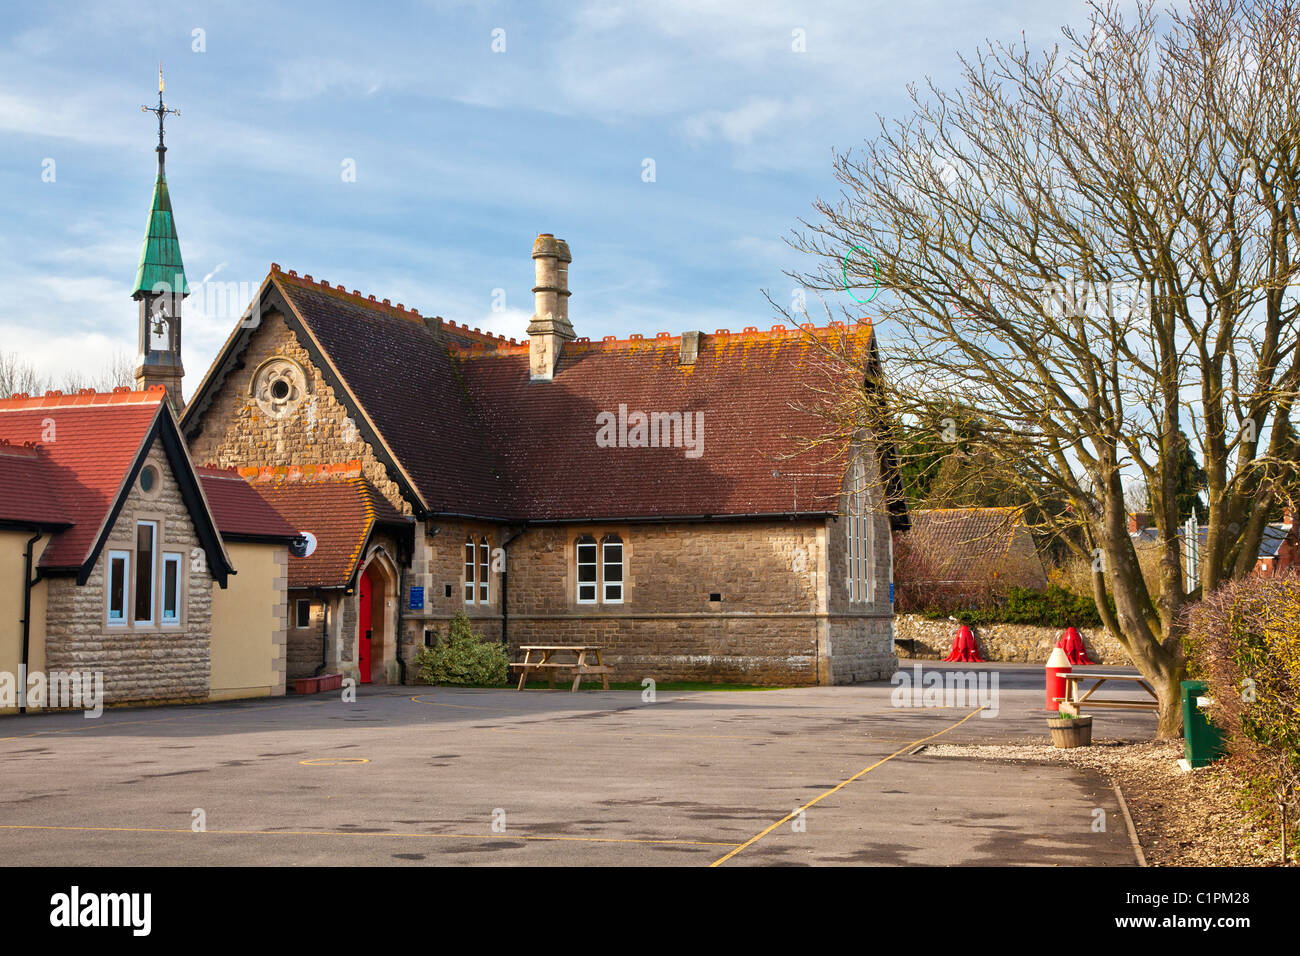 Une école primaire typiquement anglais dans le Wiltshire village de South Marston près de Swindon, England, UK avec beffroi Banque D'Images